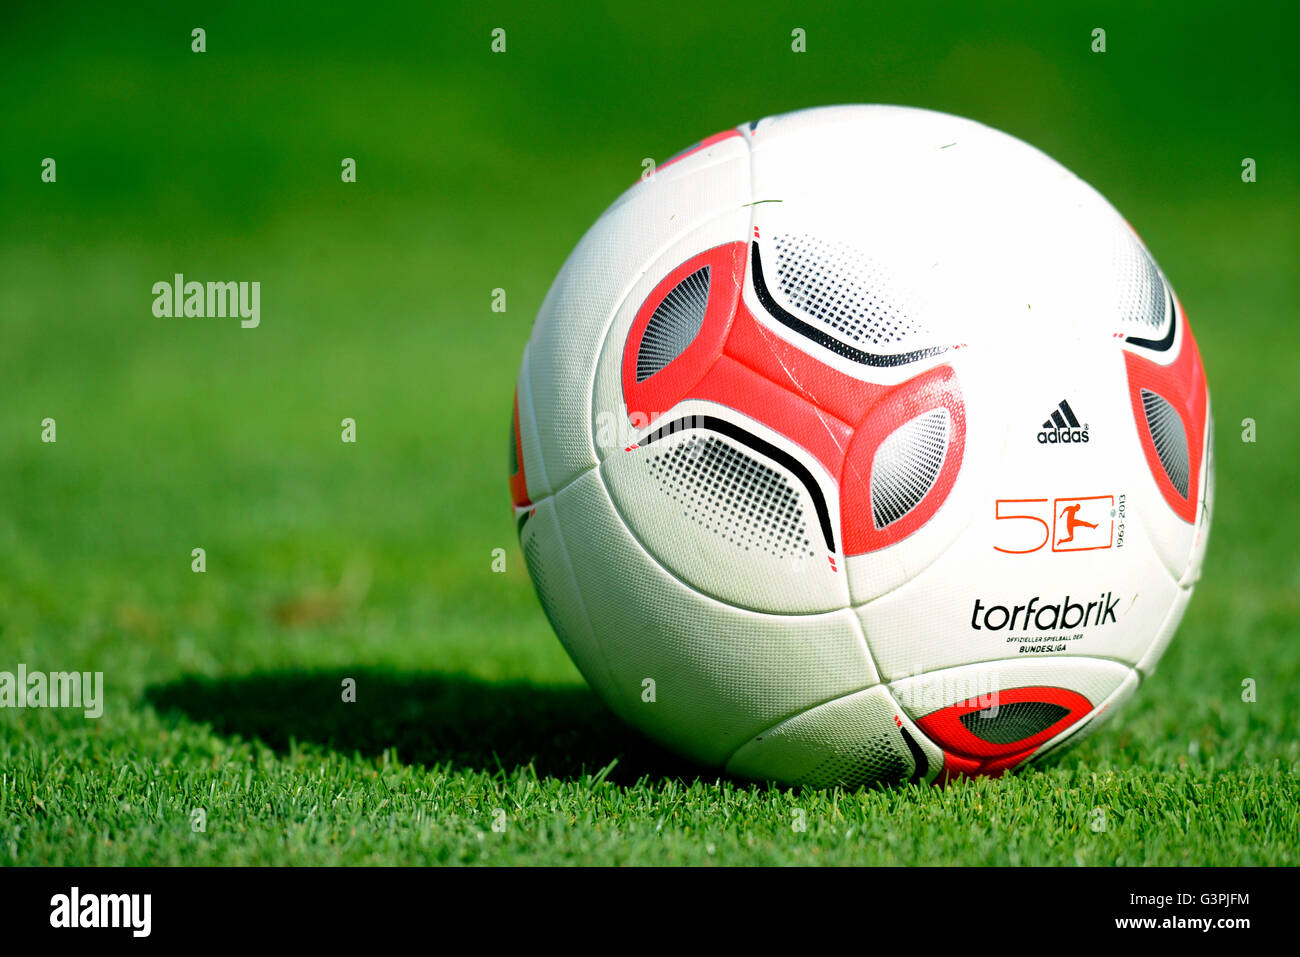 Adidas Torfabrik ball, the German Bundesliga ball of the 50th season Stock  Photo - Alamy